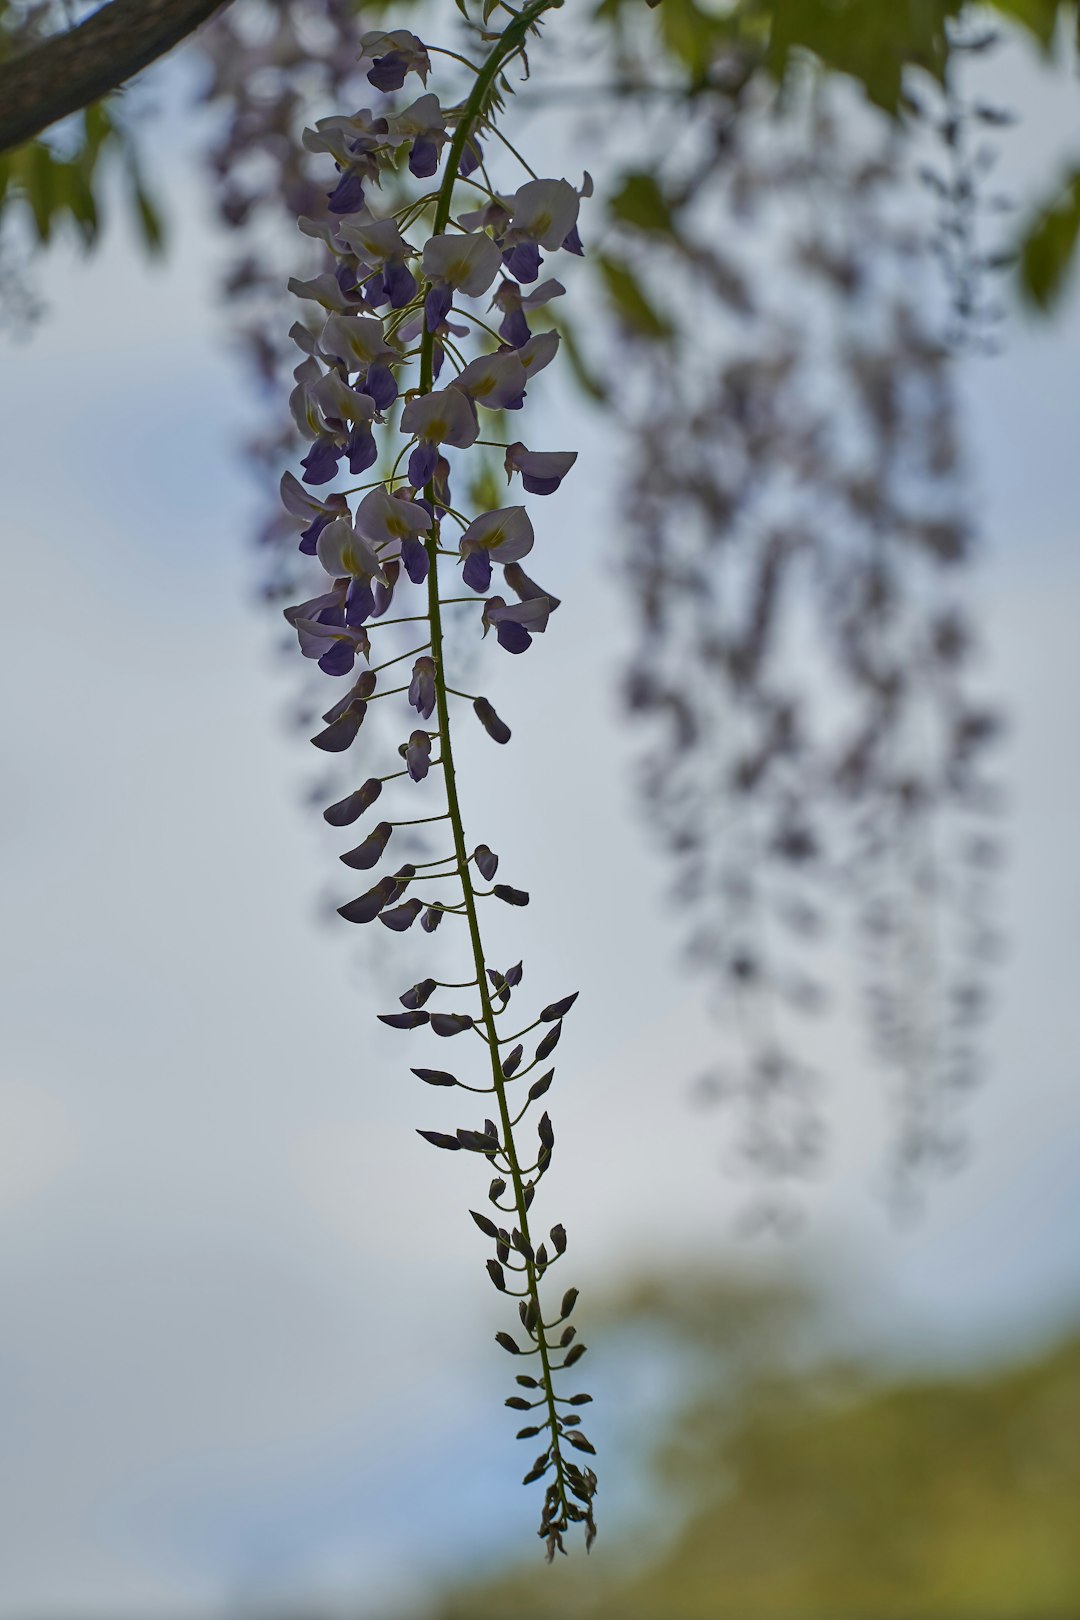 white and purple flower buds in tilt shift lens